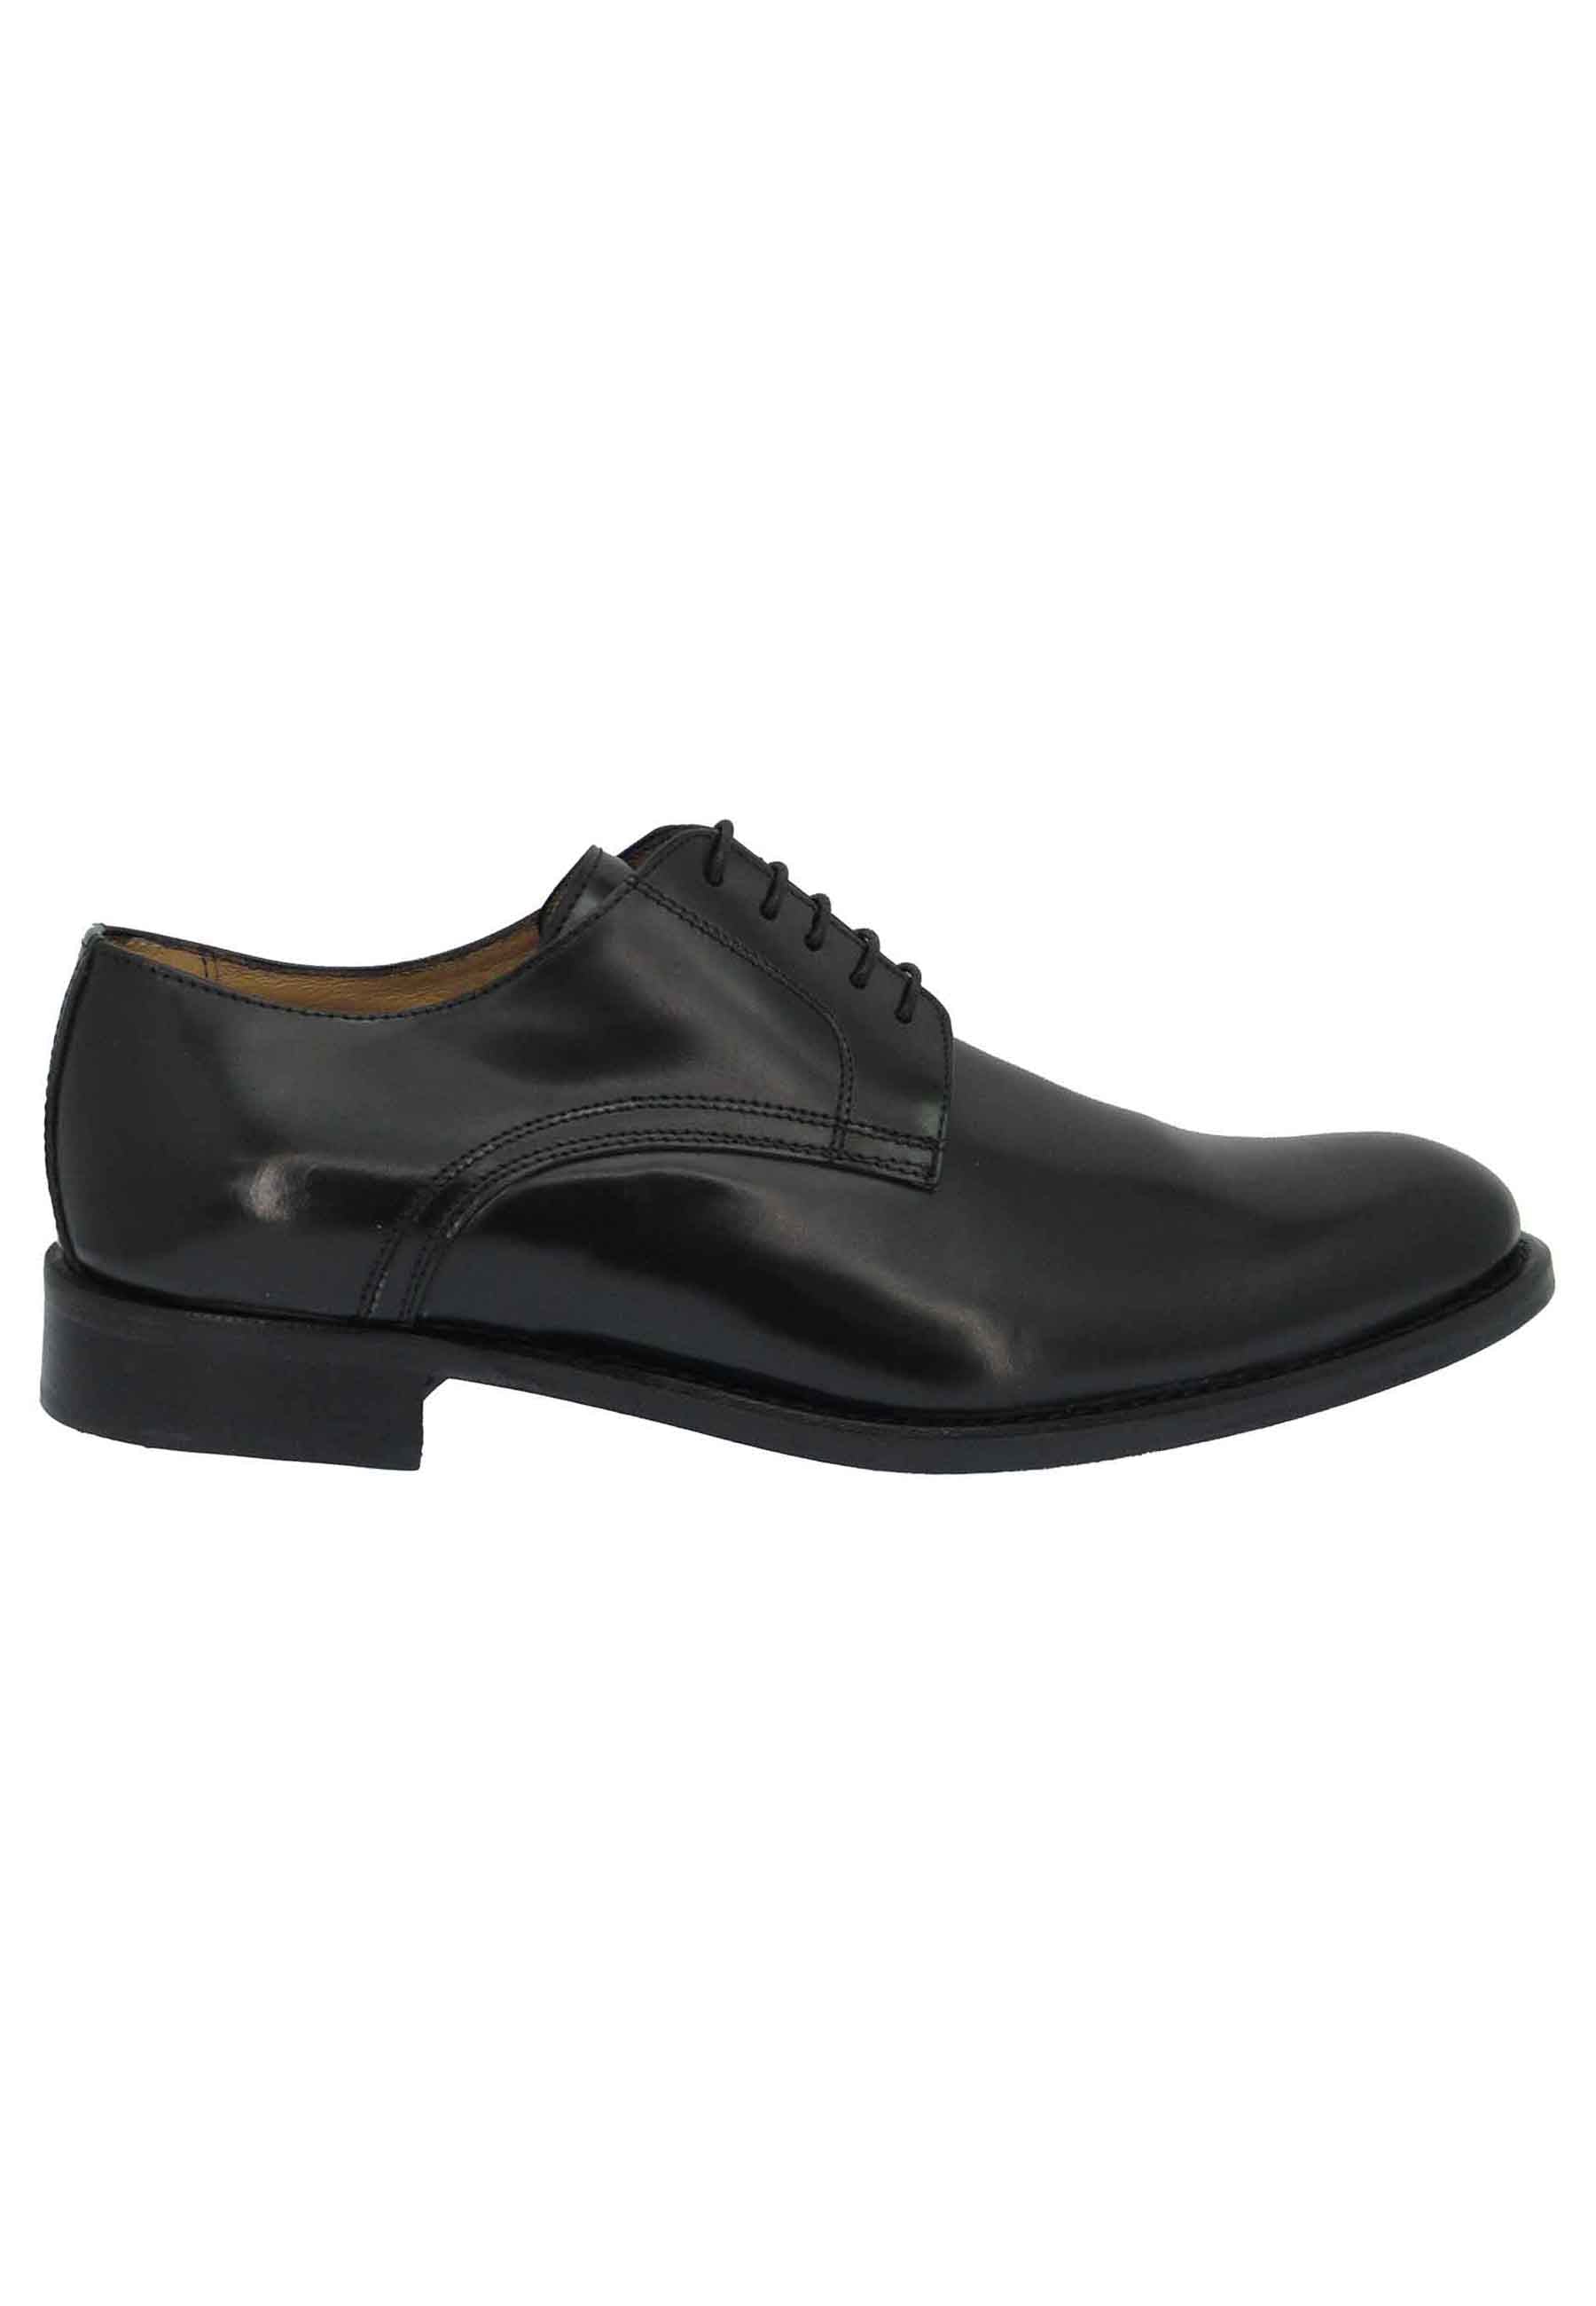 Chaussures à lacets pour hommes en cuir noir Lucina avec semelle et talon en cuir